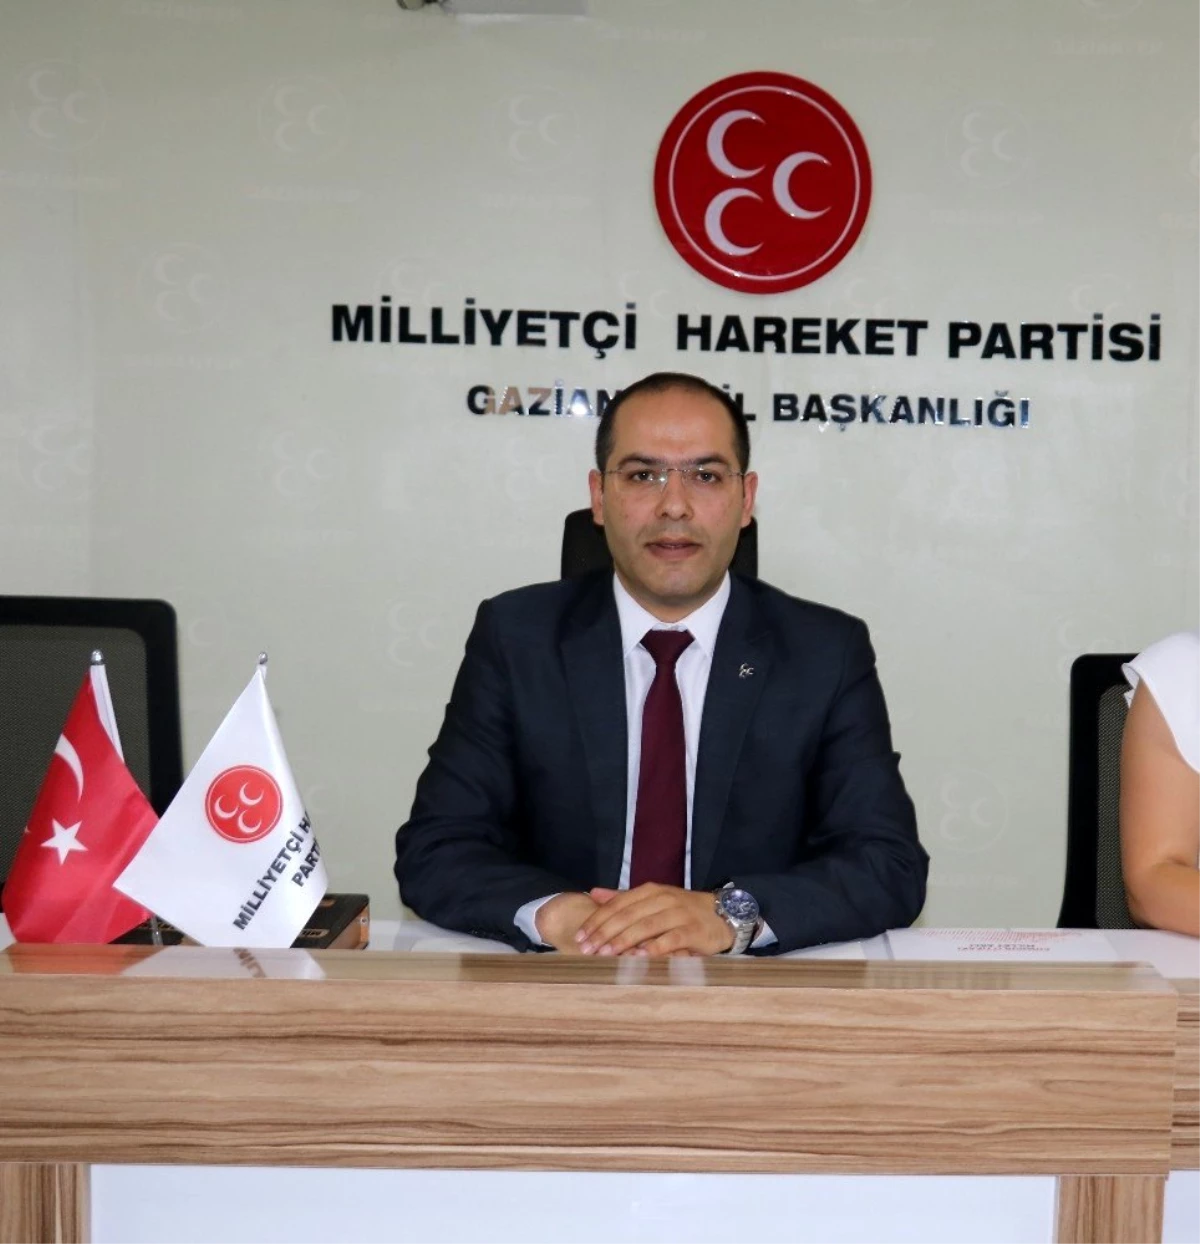 MHP Gaziantep İl Teşkilatında kongre heyecanı başlıyor